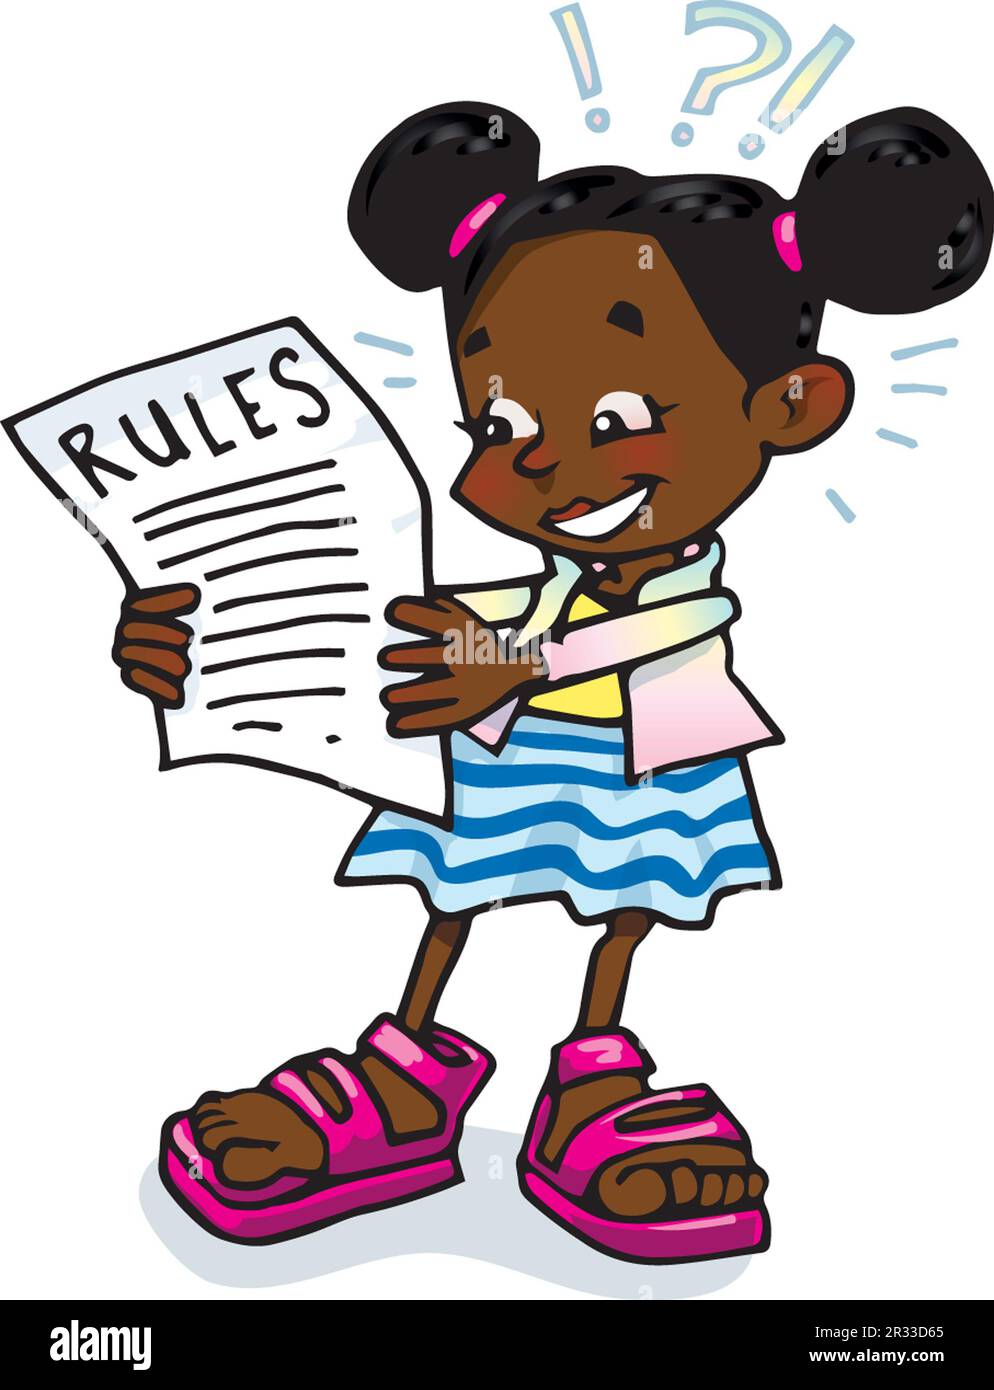 Joven niña negra leyendo la lista de reglas, el grupo ha elaborado signos de interrogación y signos de exclamación que indican comprensión y cuestionamiento del arte educativo Foto de stock